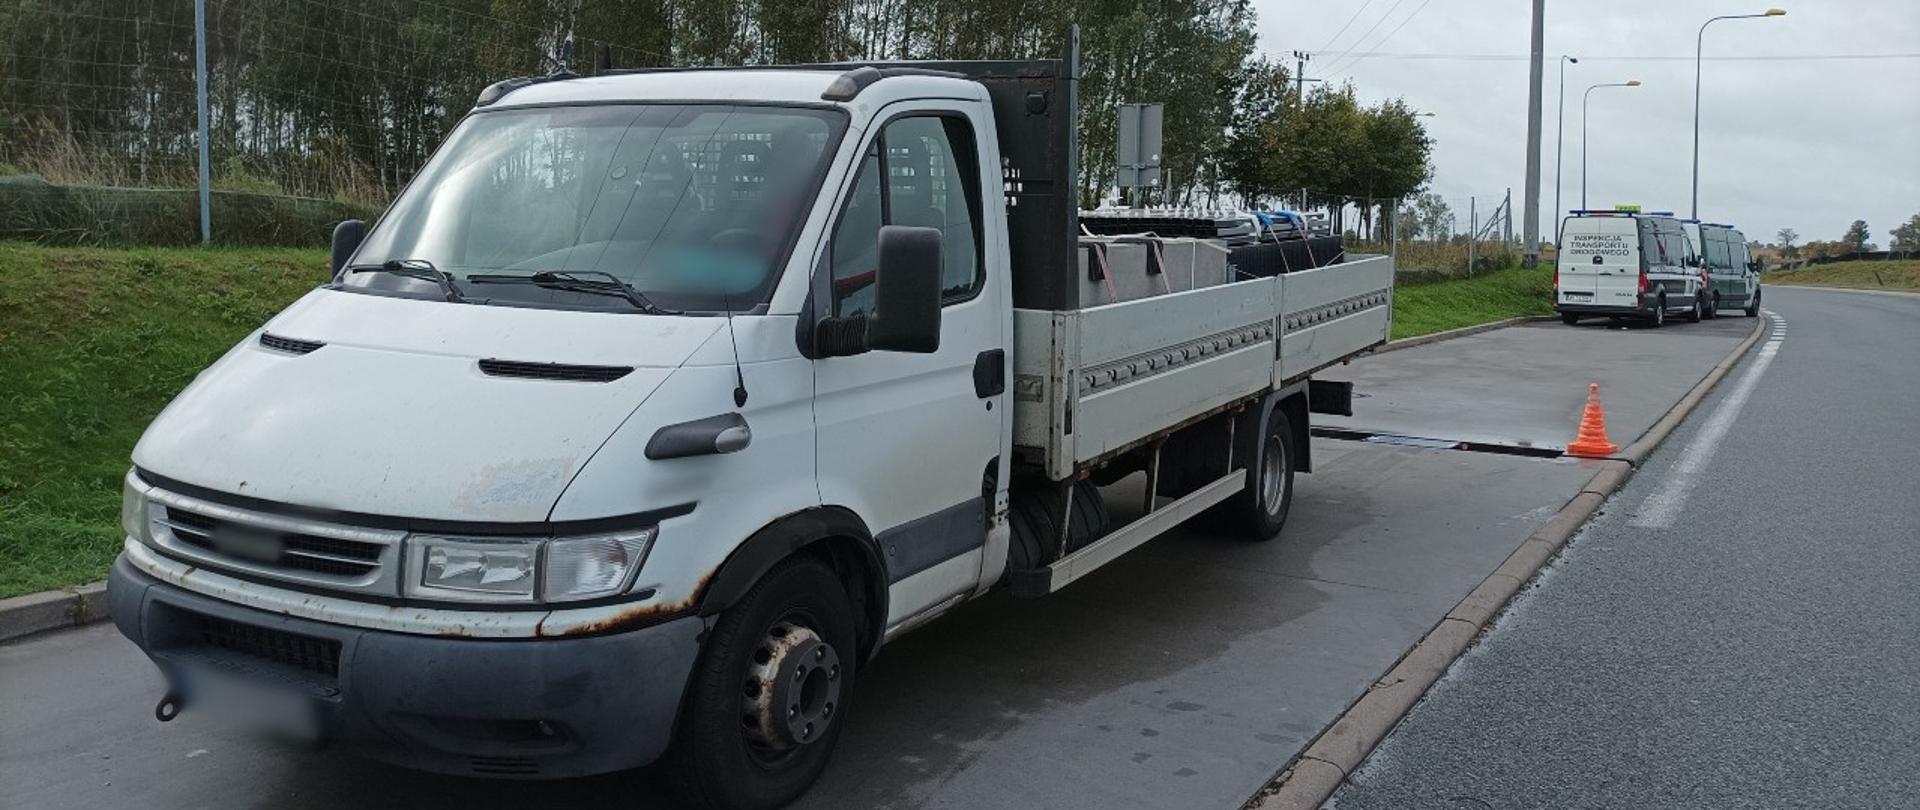 Samochód dostawczy, zatrzymany do kontroli przez patrol warmińsko-mazurskiej Inspekcji Transportu Drogowego, ważył ponad 7,1 t zamiast dopuszczalnych 3,5 t.